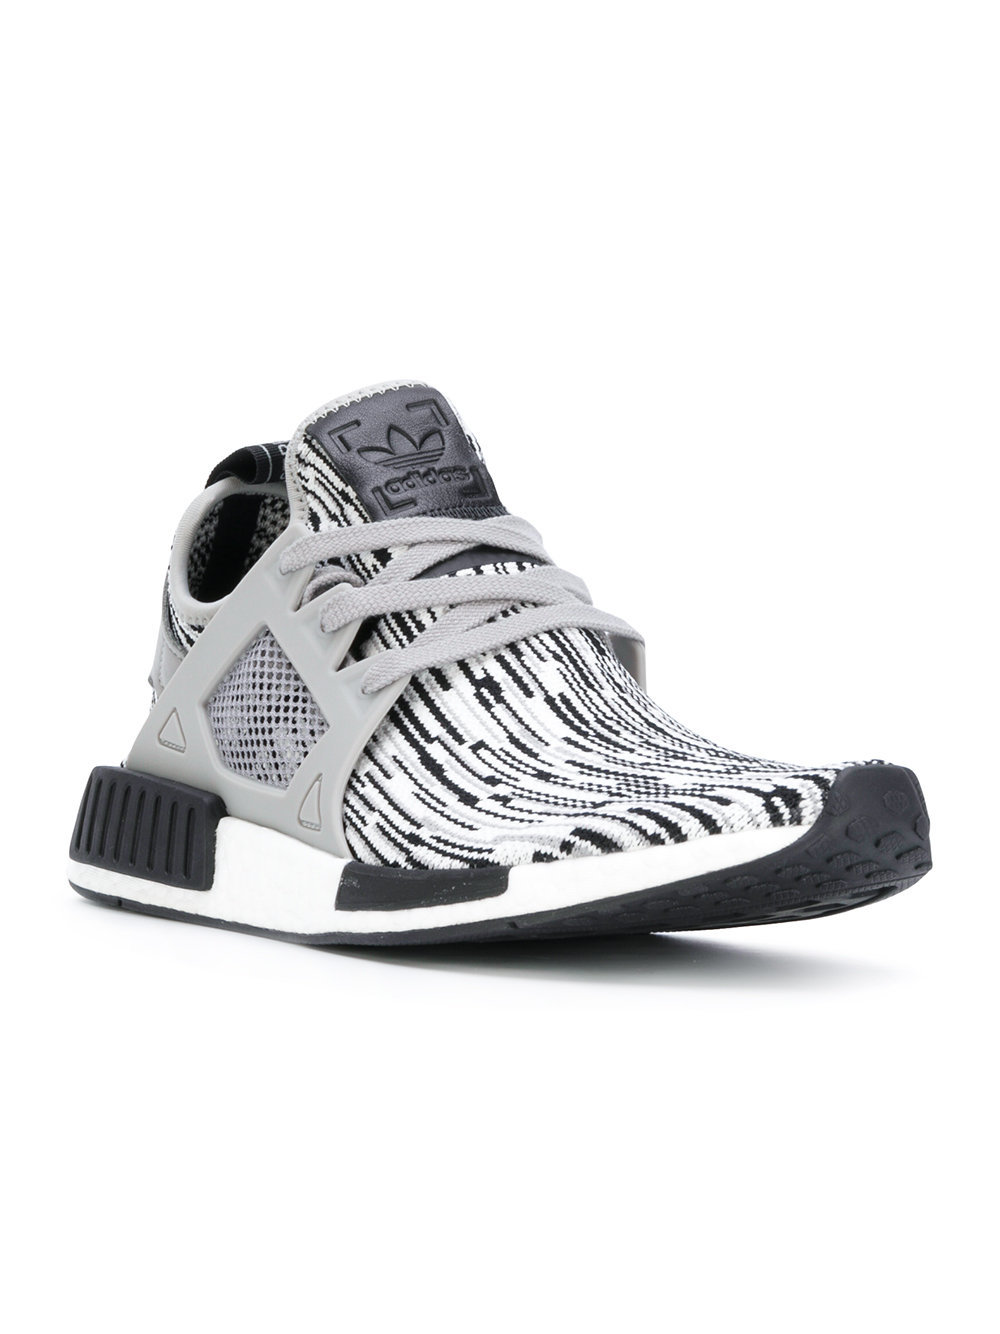 adidas Nmd Xr1 Primeknit Sneakers, $180 